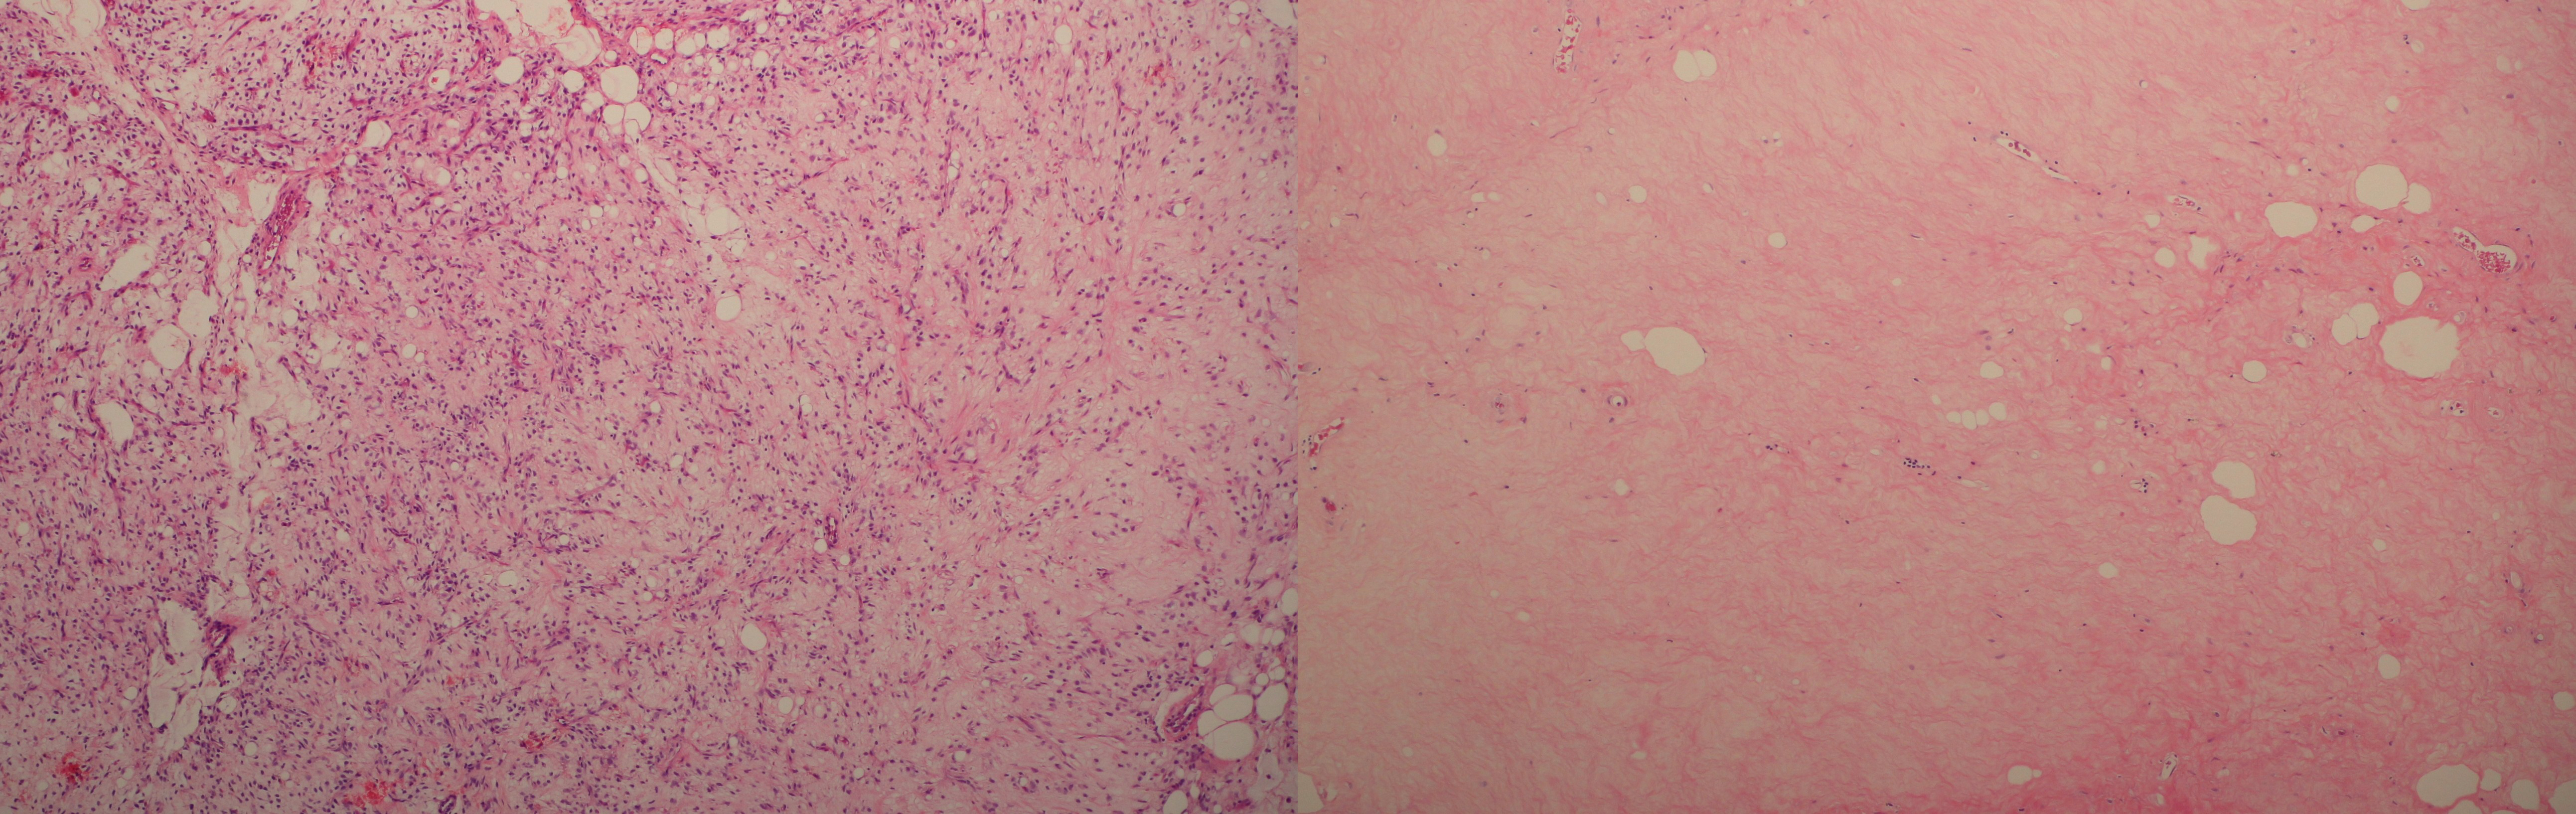 Histologický obraz před a po HILP : bylo dosaženo 99% nekrózy tumoru